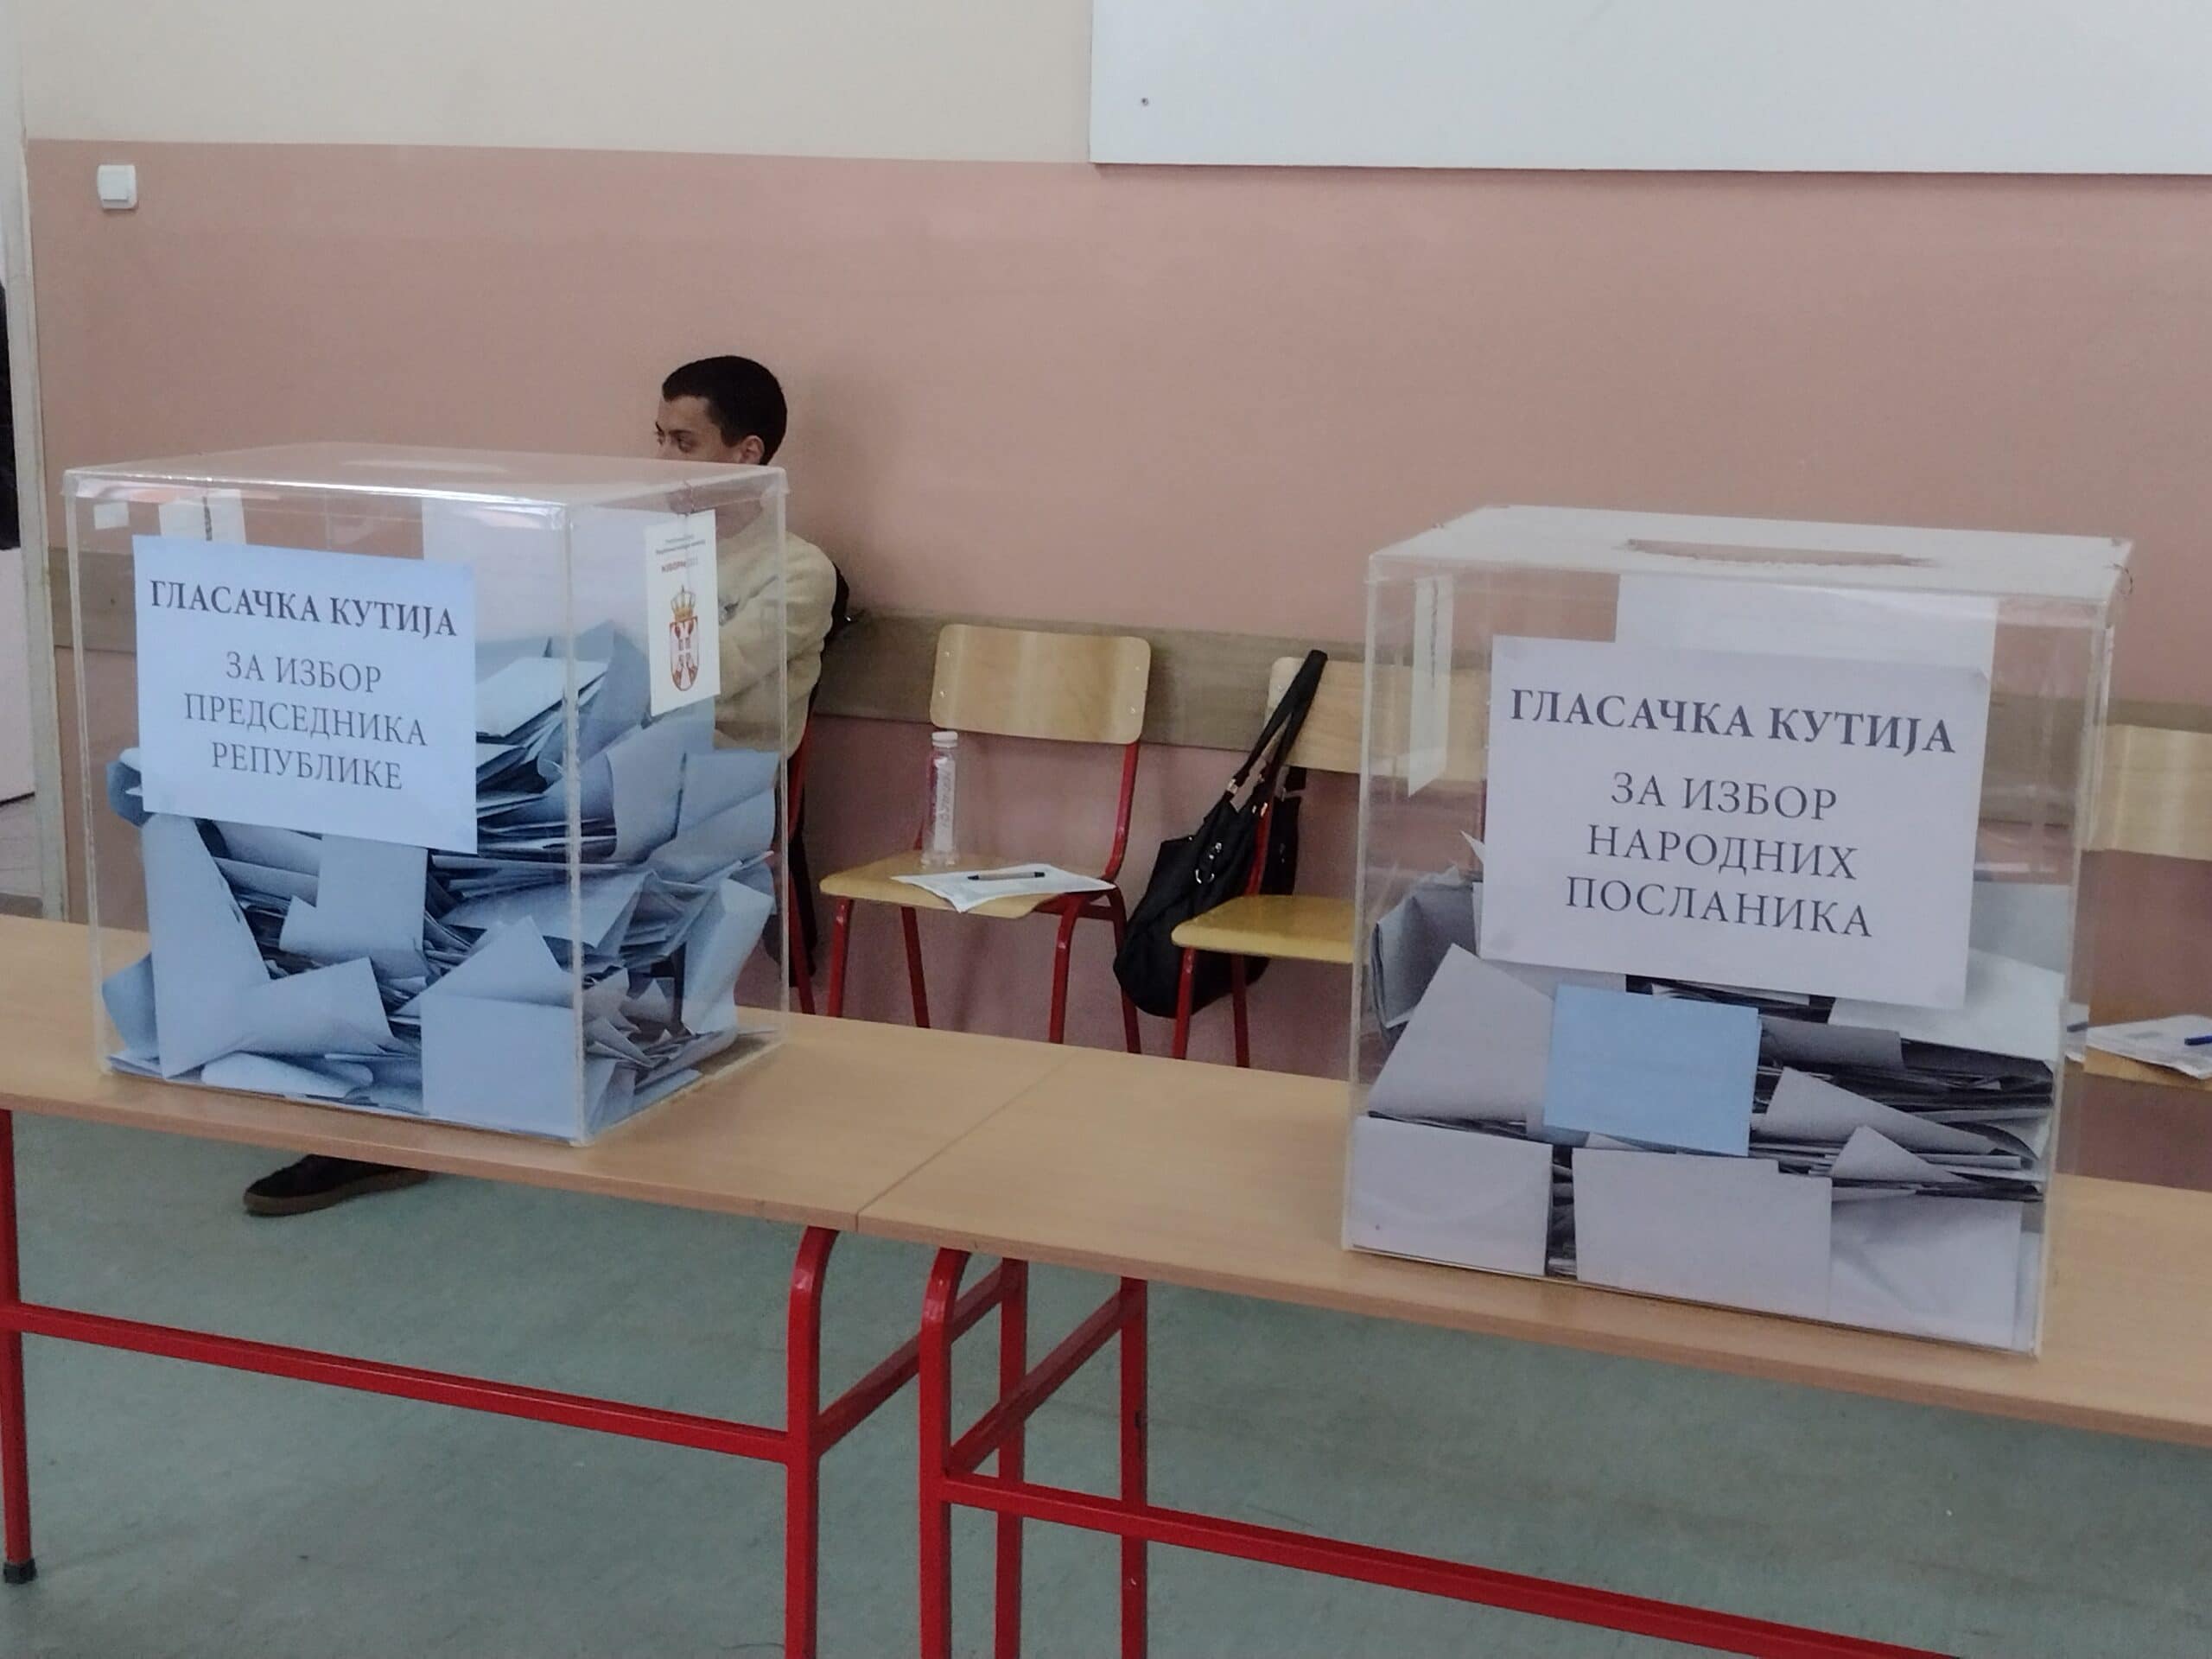 Centar Kragujevca glasao je za opoziciju, dok su rubna naselja i dalje za Vučića: Šta se to desilo u nedelju 2